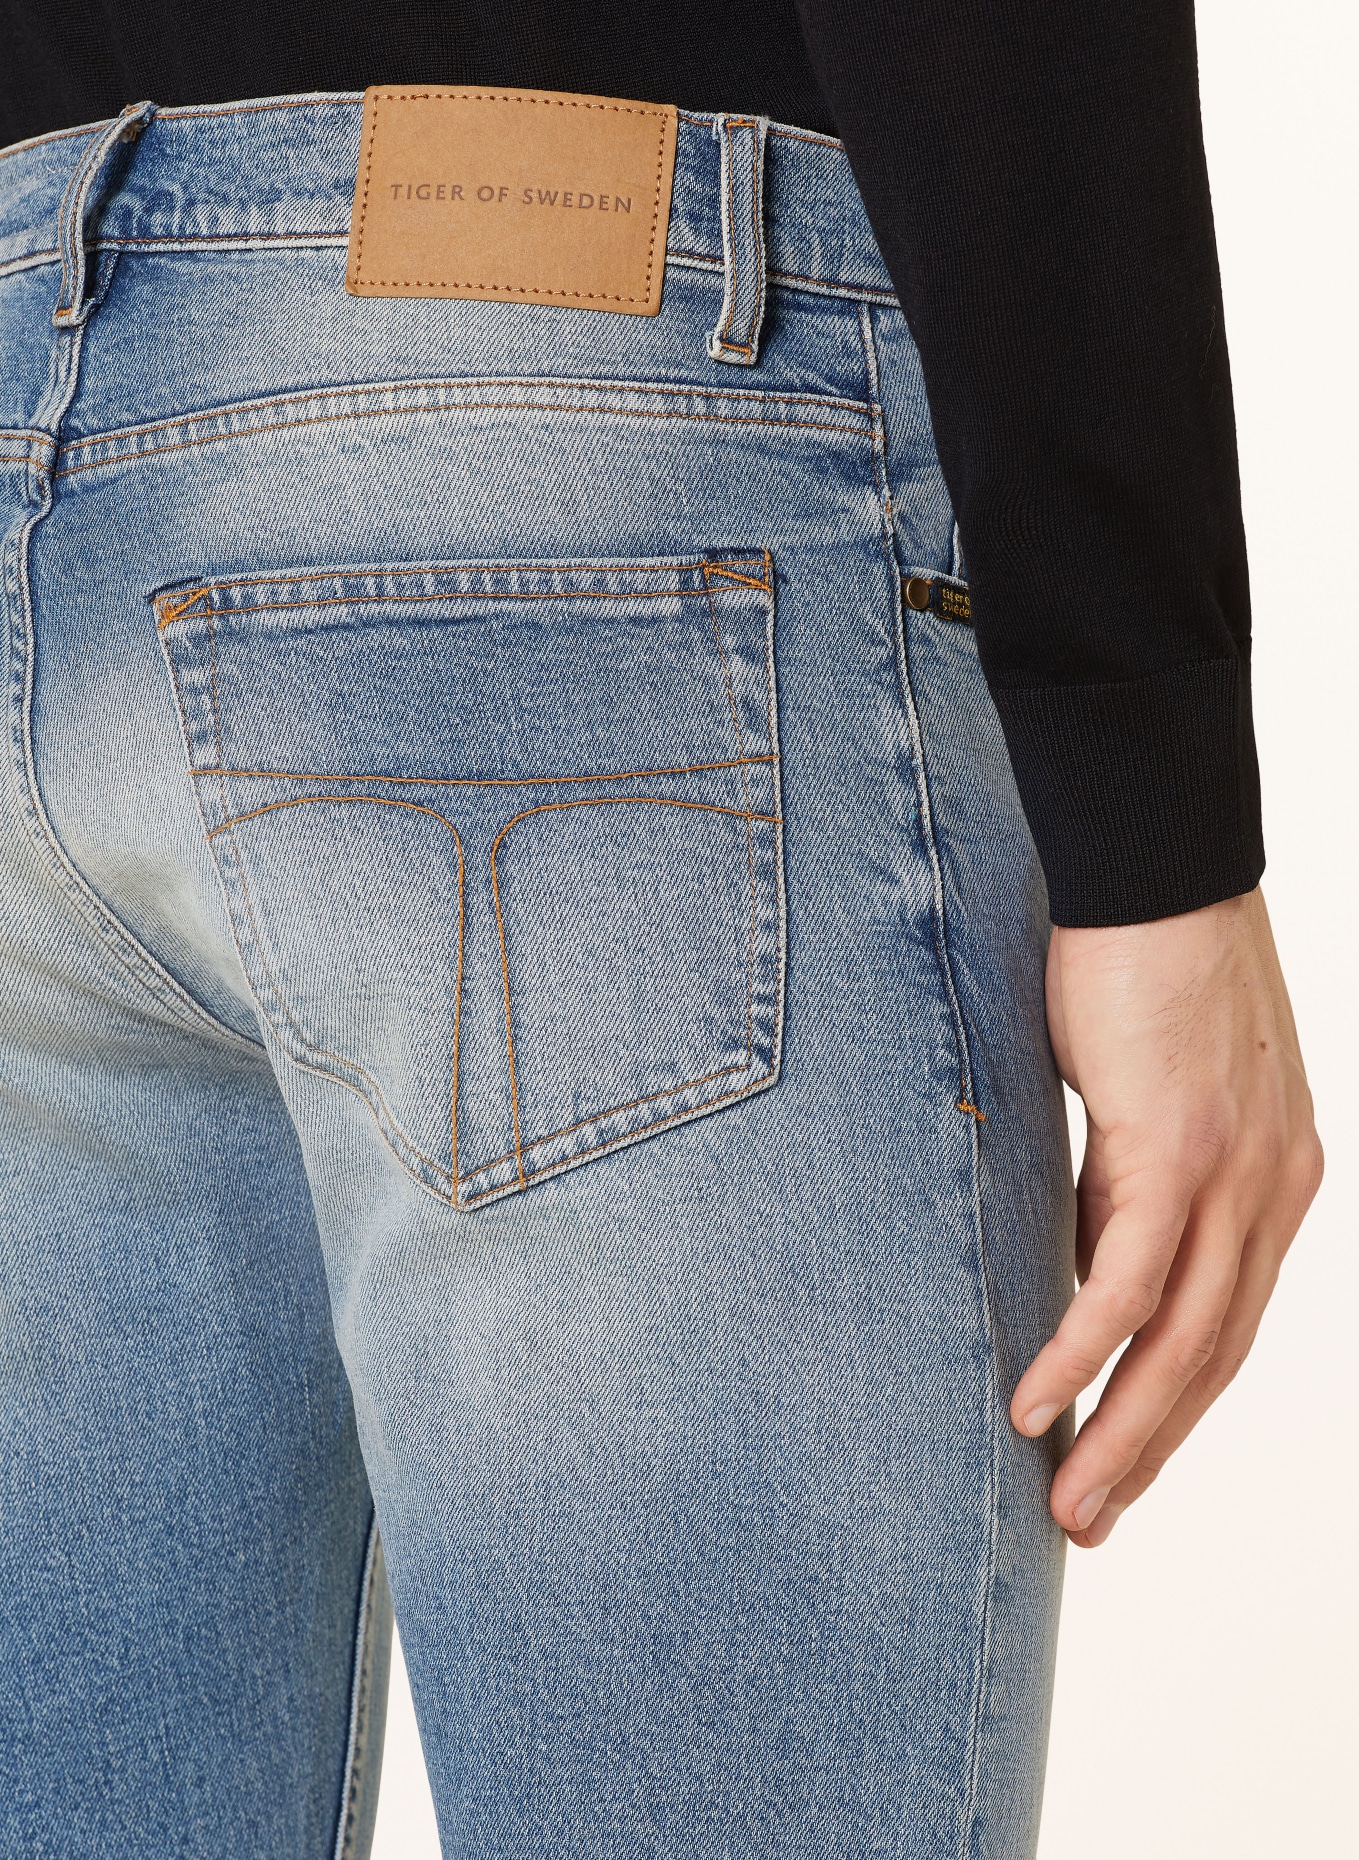 TIGER OF SWEDEN Jeans PISTOLERO slim fit, Color: 200 Light blue (Image 6)